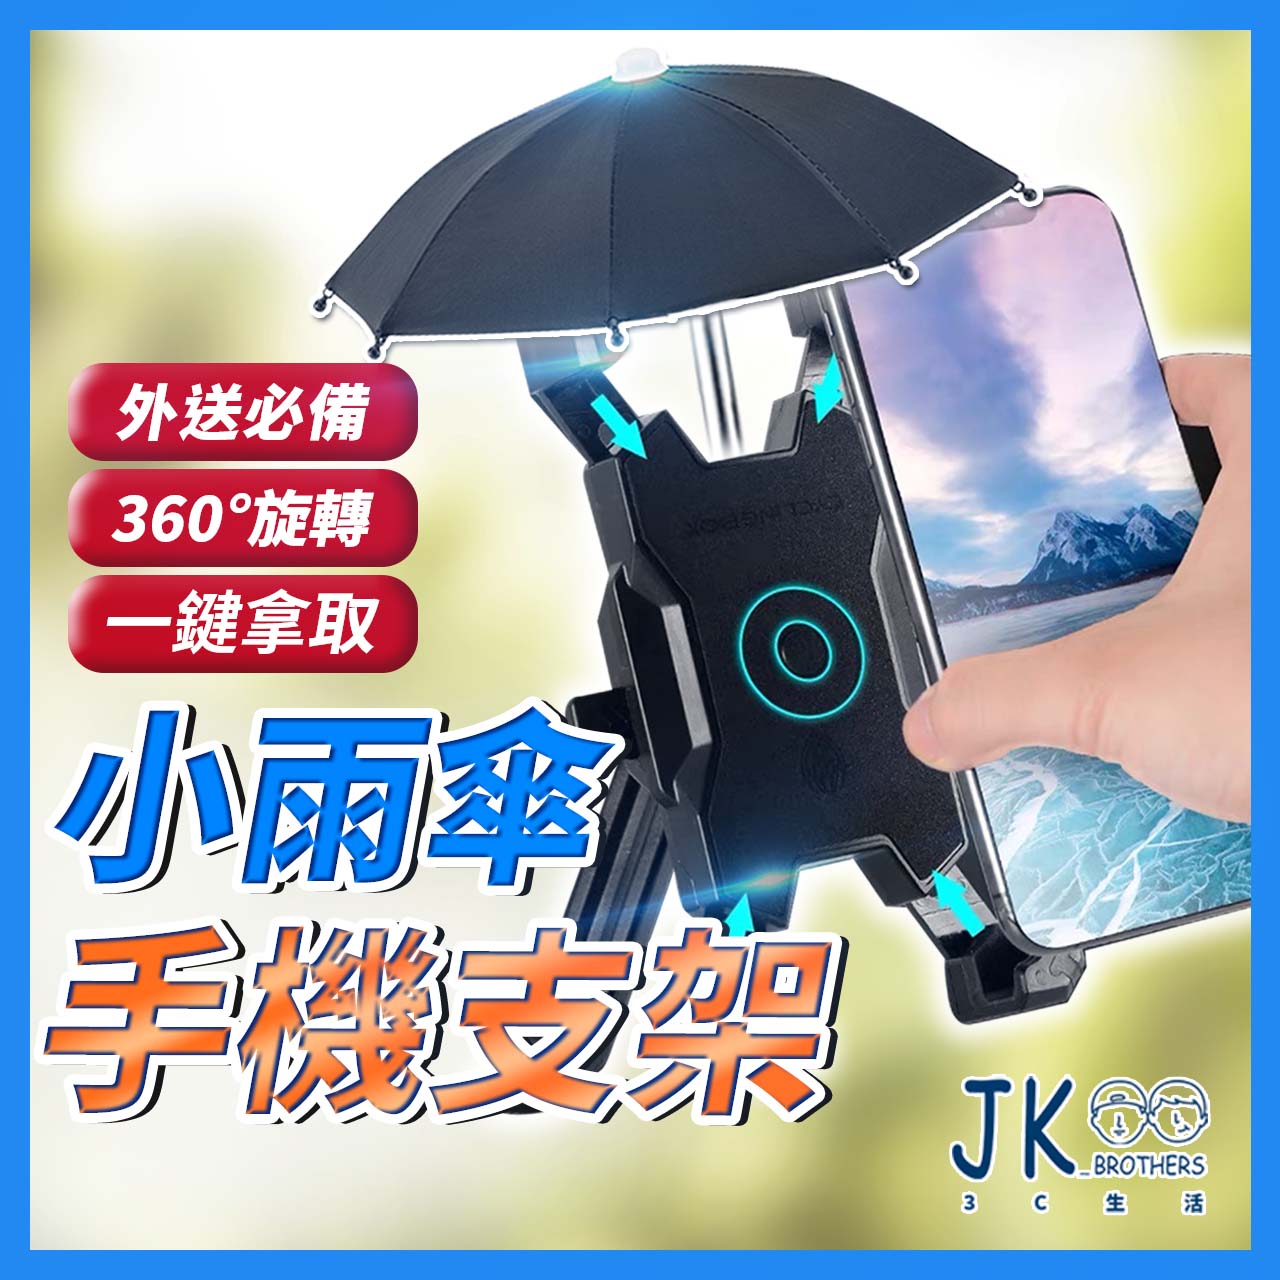 機車手機架 手機架 小雨傘 迷你小雨傘 遮陽傘 遮陽小雨傘 外送小傘 外送必備 車用手機架 手機夾